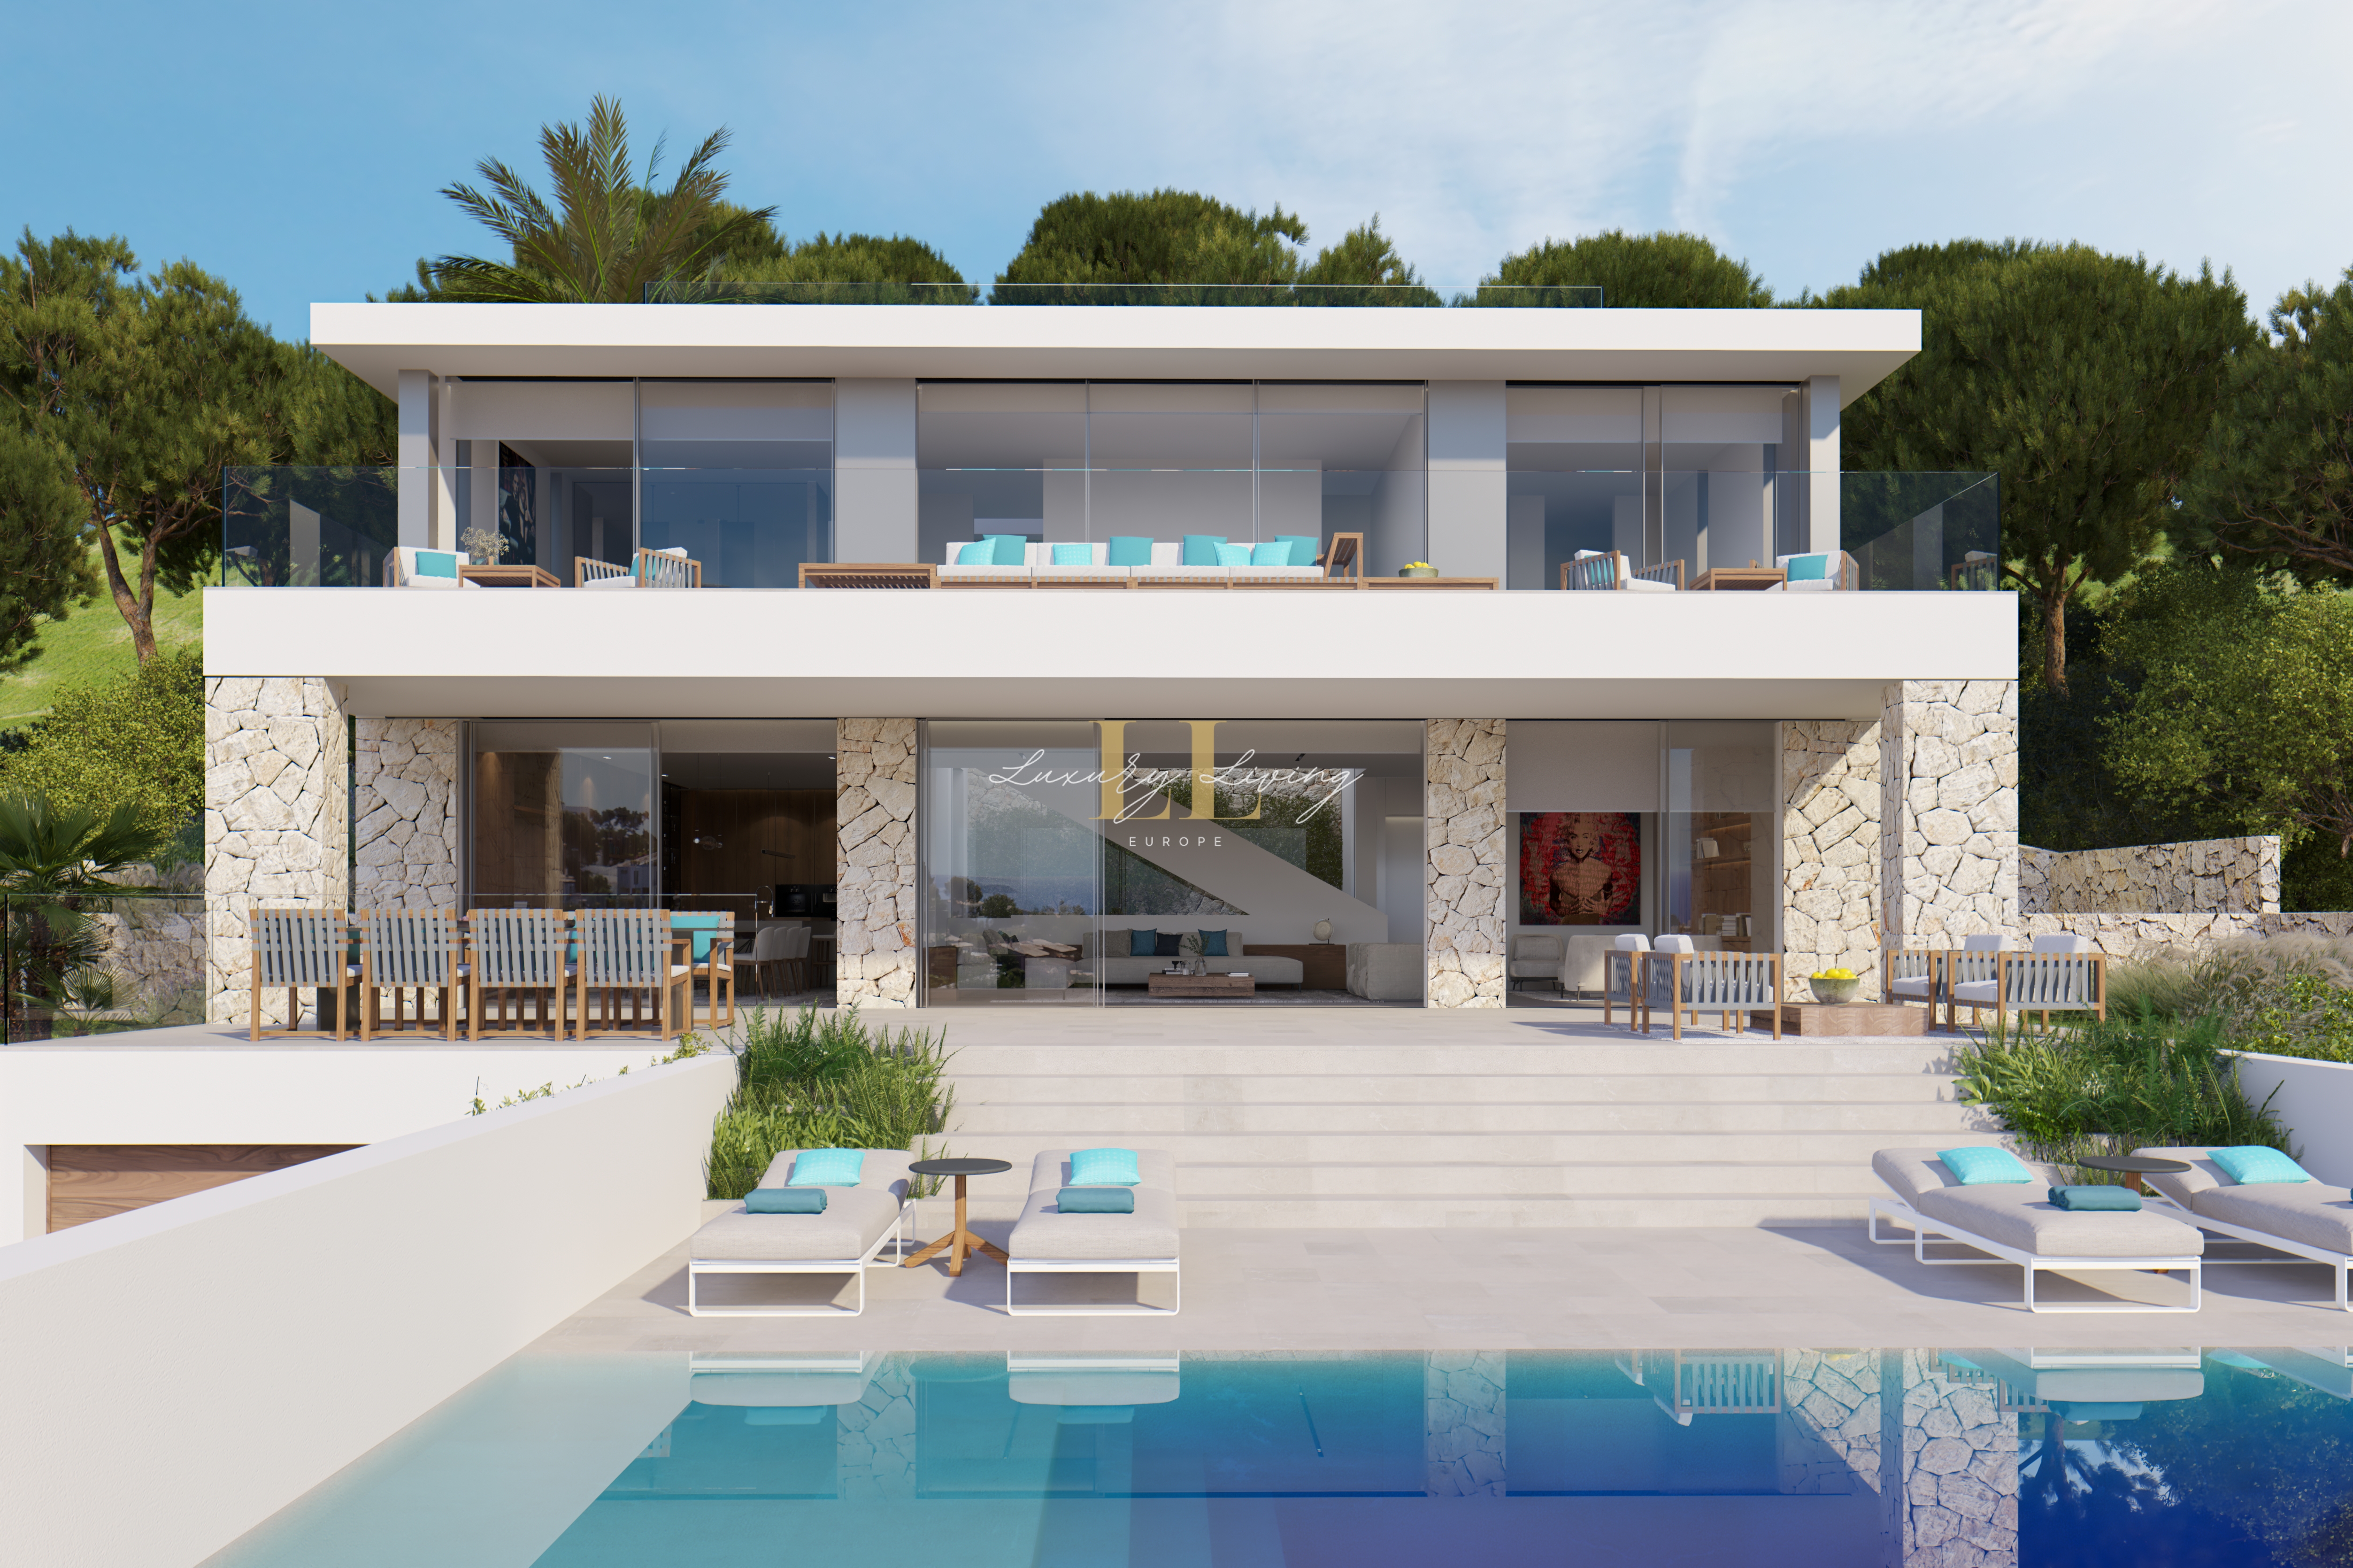 Villa Zane Accommodation in Costa d'en Blanes